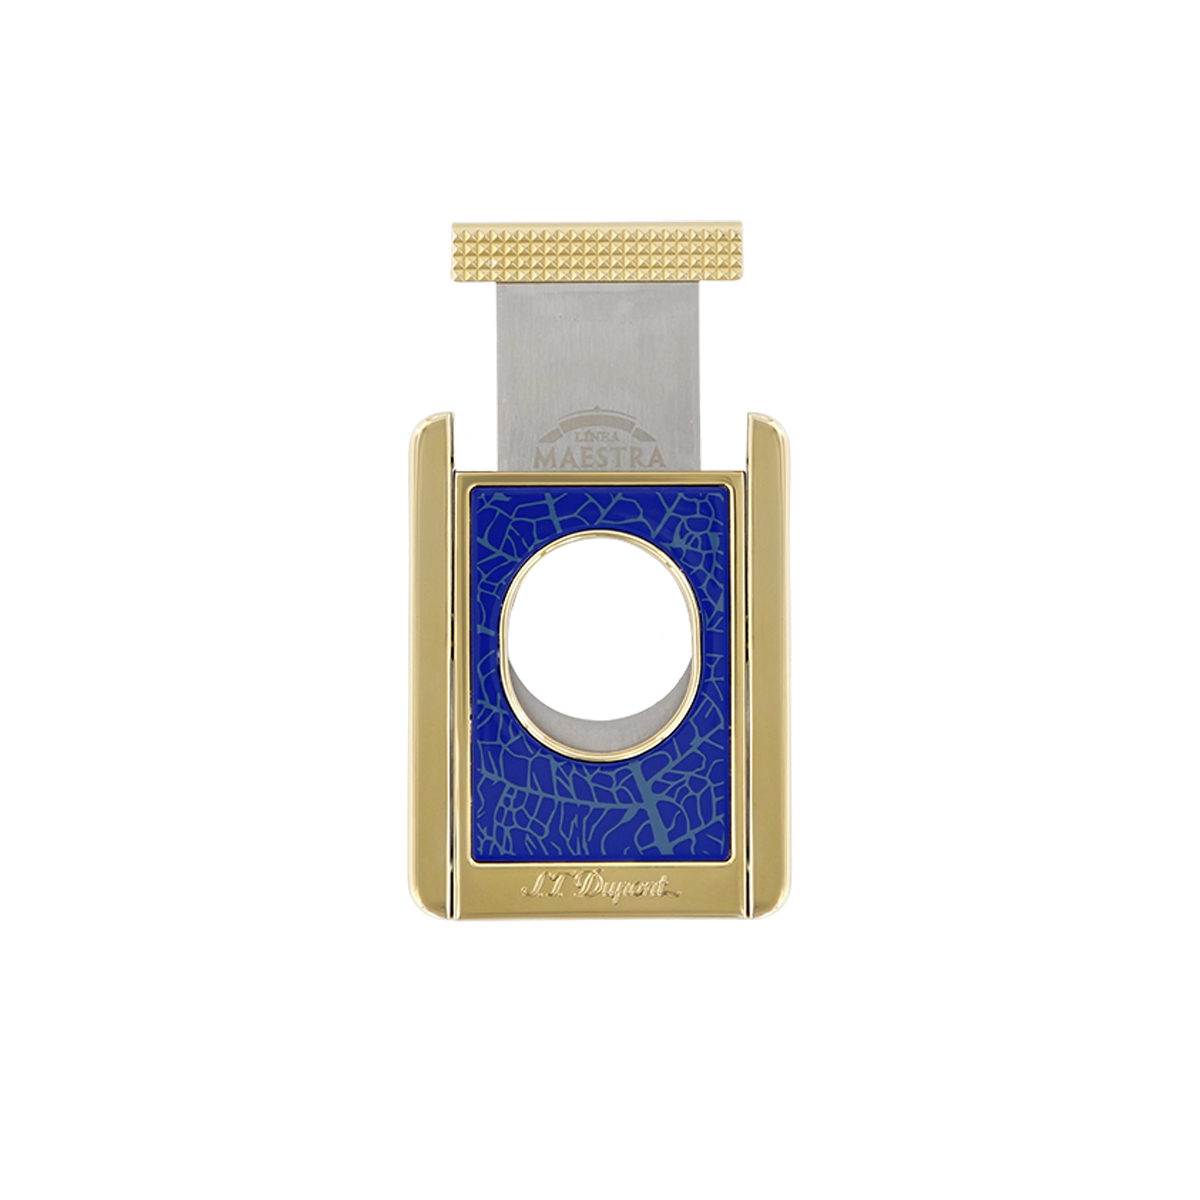 Гильотина для сигар Partagas Cigar Universe 3495 Цвет Золотистый Отделка позолотой и лаком | S.T. Dupont